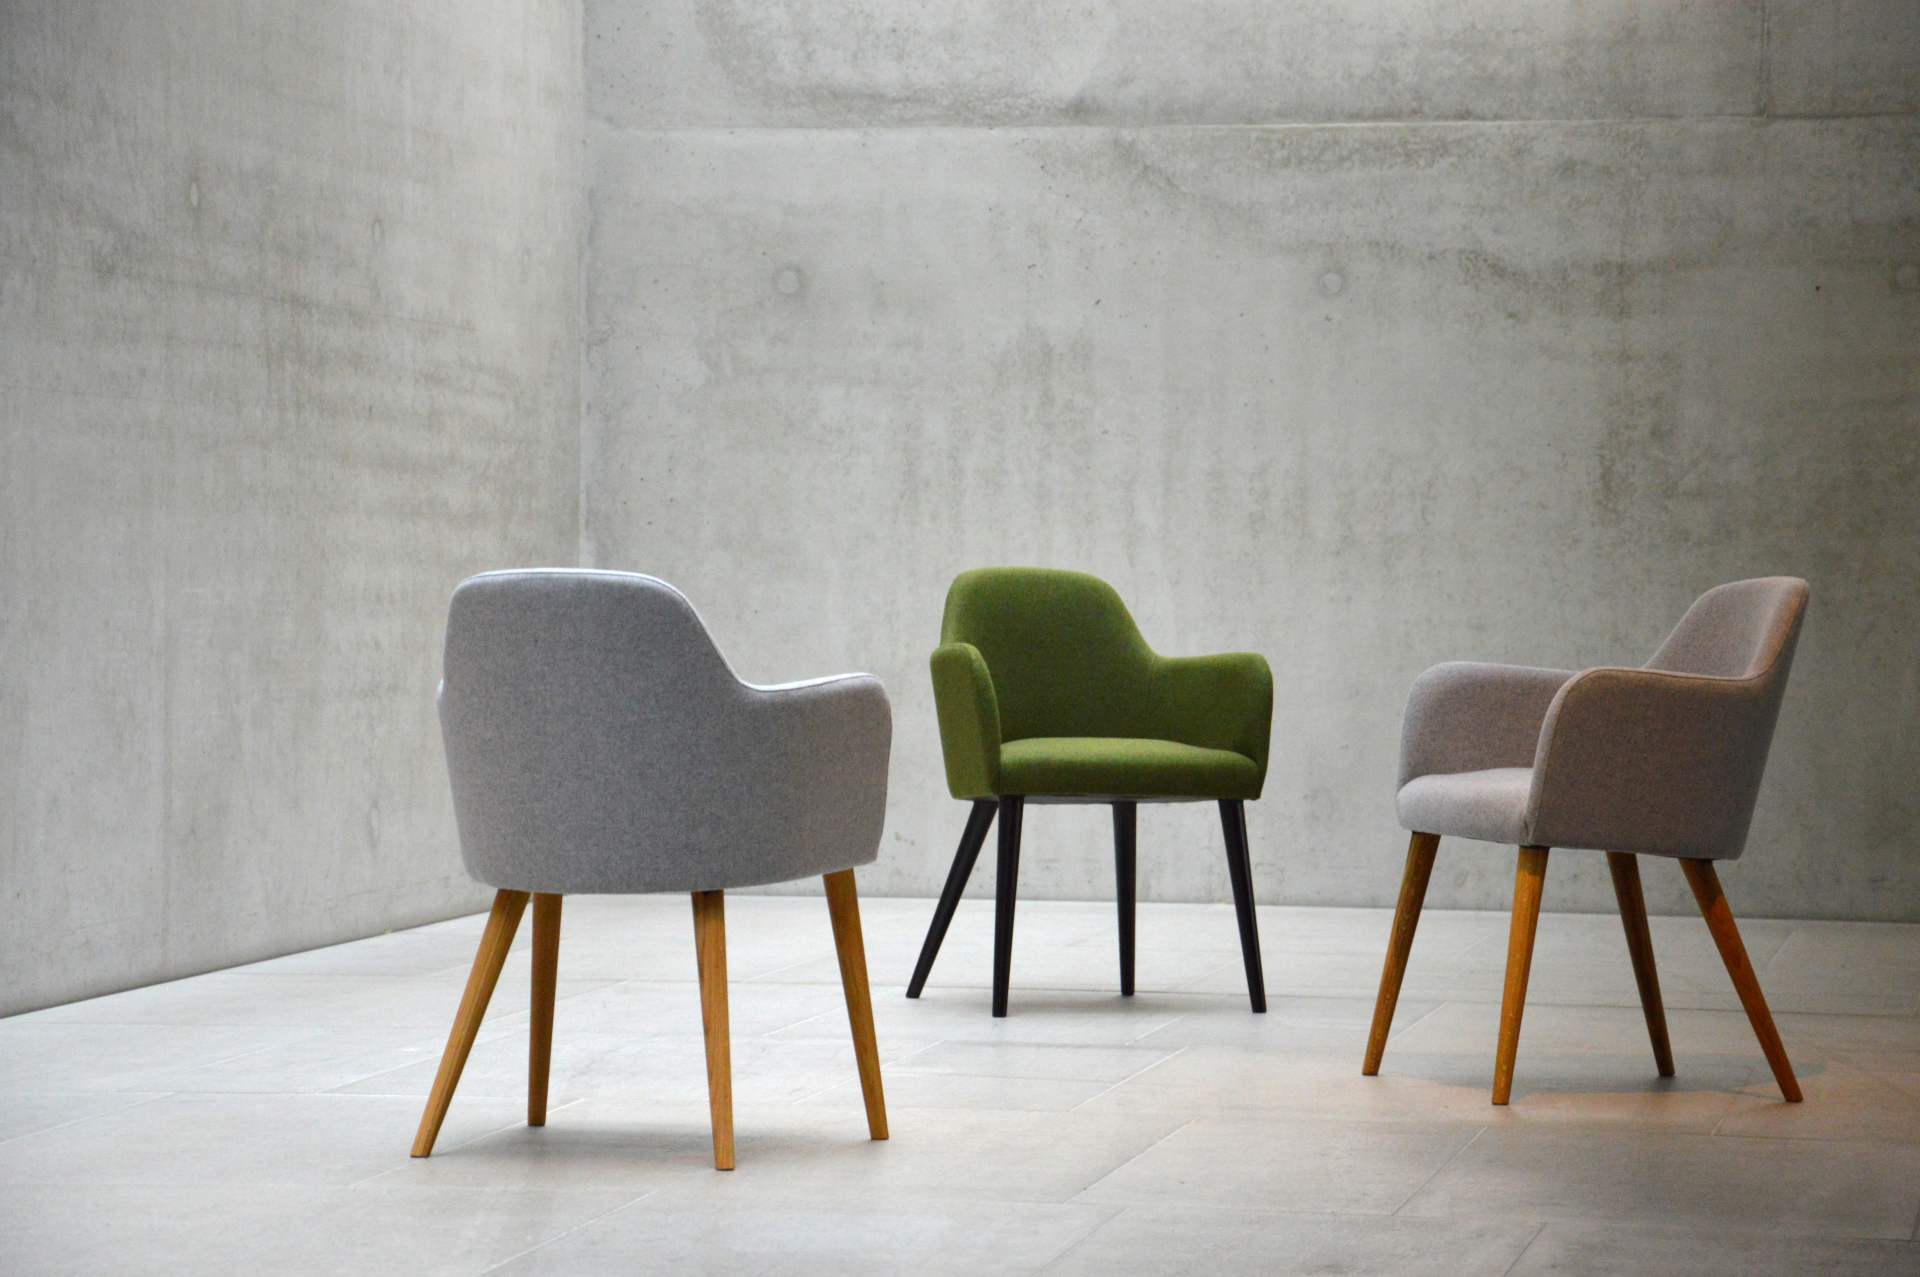 Der Sessel Flaminia wurde aus einem Eichenholz Gestell gefertigt. Die Sitz- und Rückenfläche ist aus Wolle. Designet wurde der Sessel von der Marke Jan Kurtz und hat eine hellgraue Farbe.